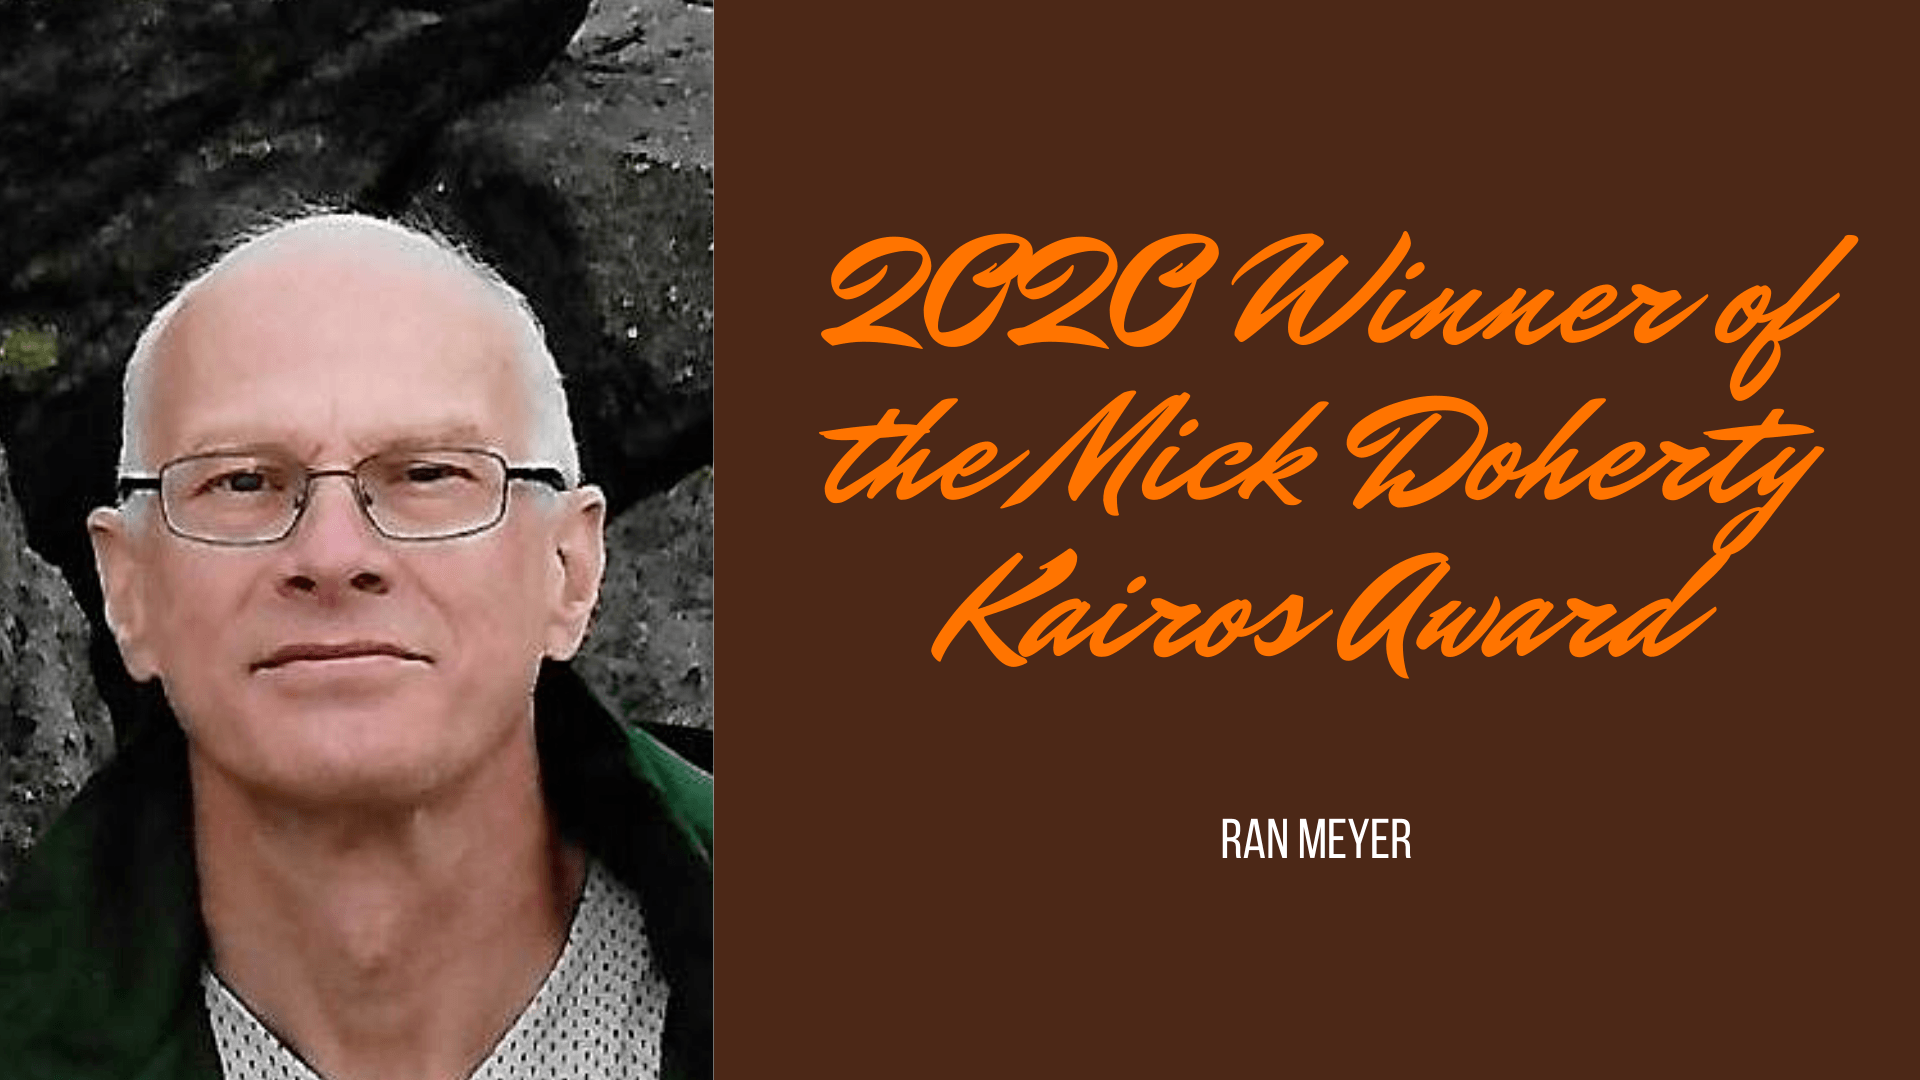 2020 Winner of the Mick Doherty Kairos Award: Ran Meyer